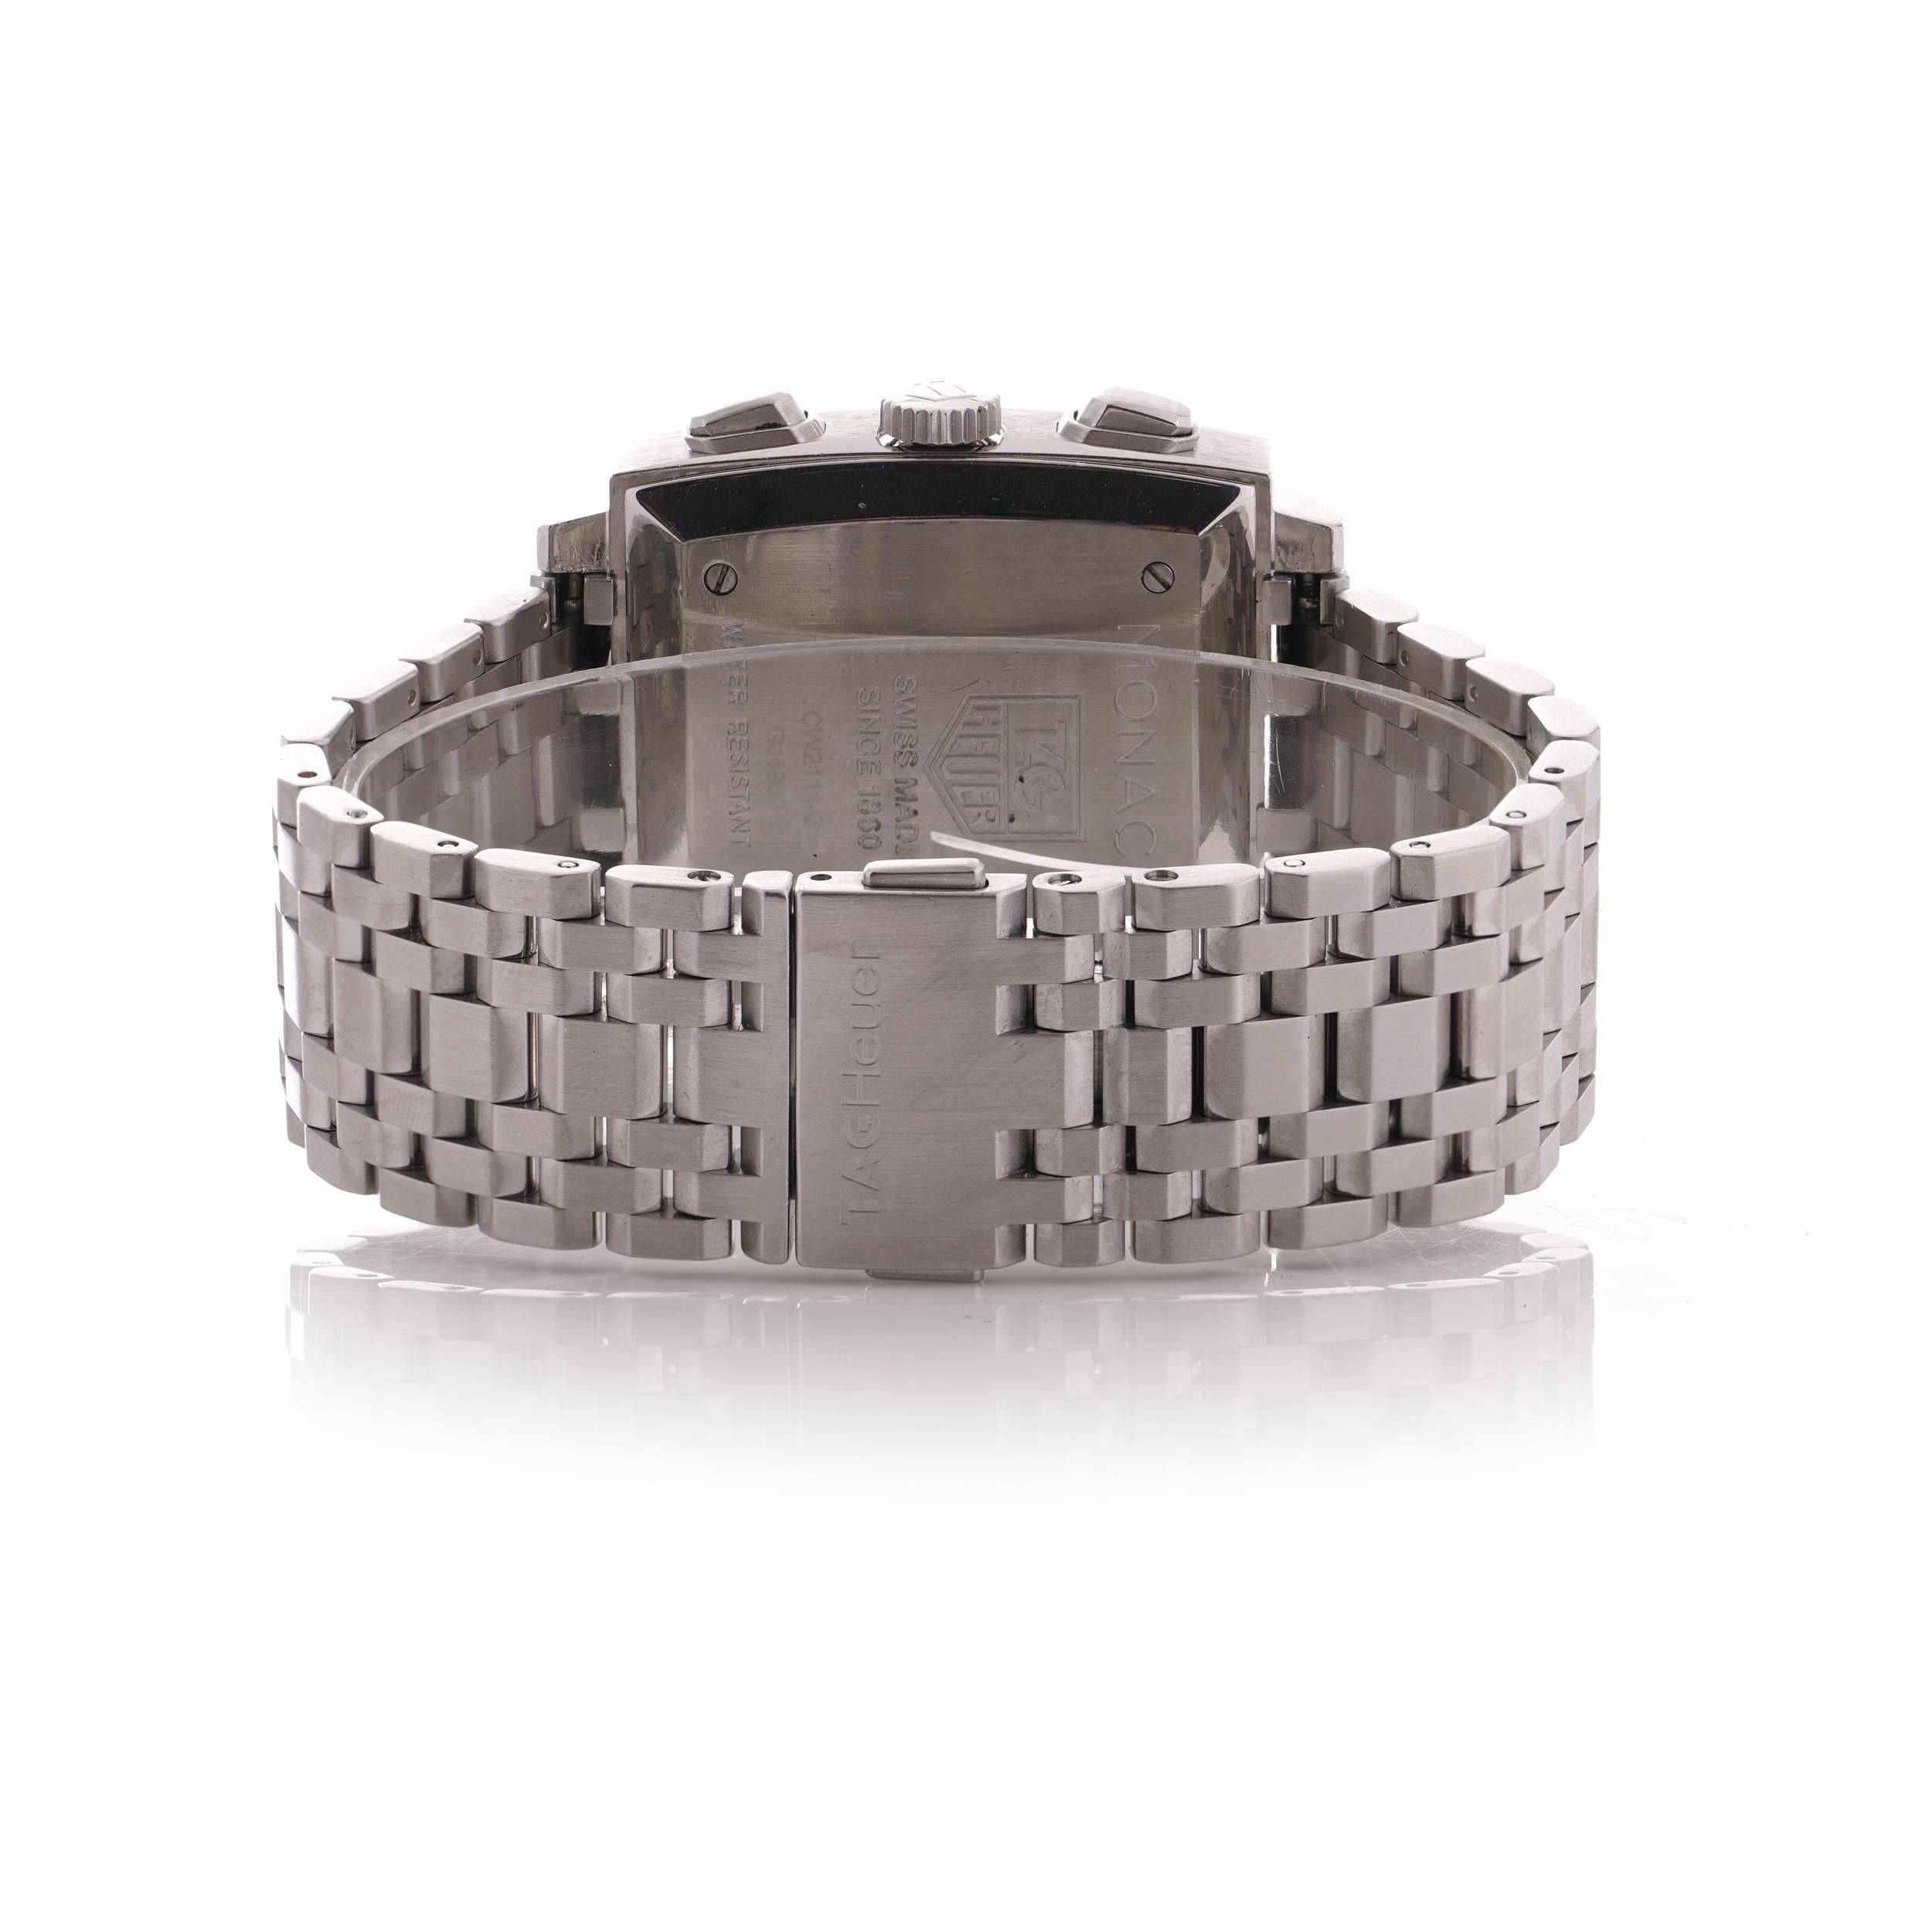 Men's Tag Heuer Monaco steel 38 mm case black dial men's automatic wristwatch CW2111 For Sale